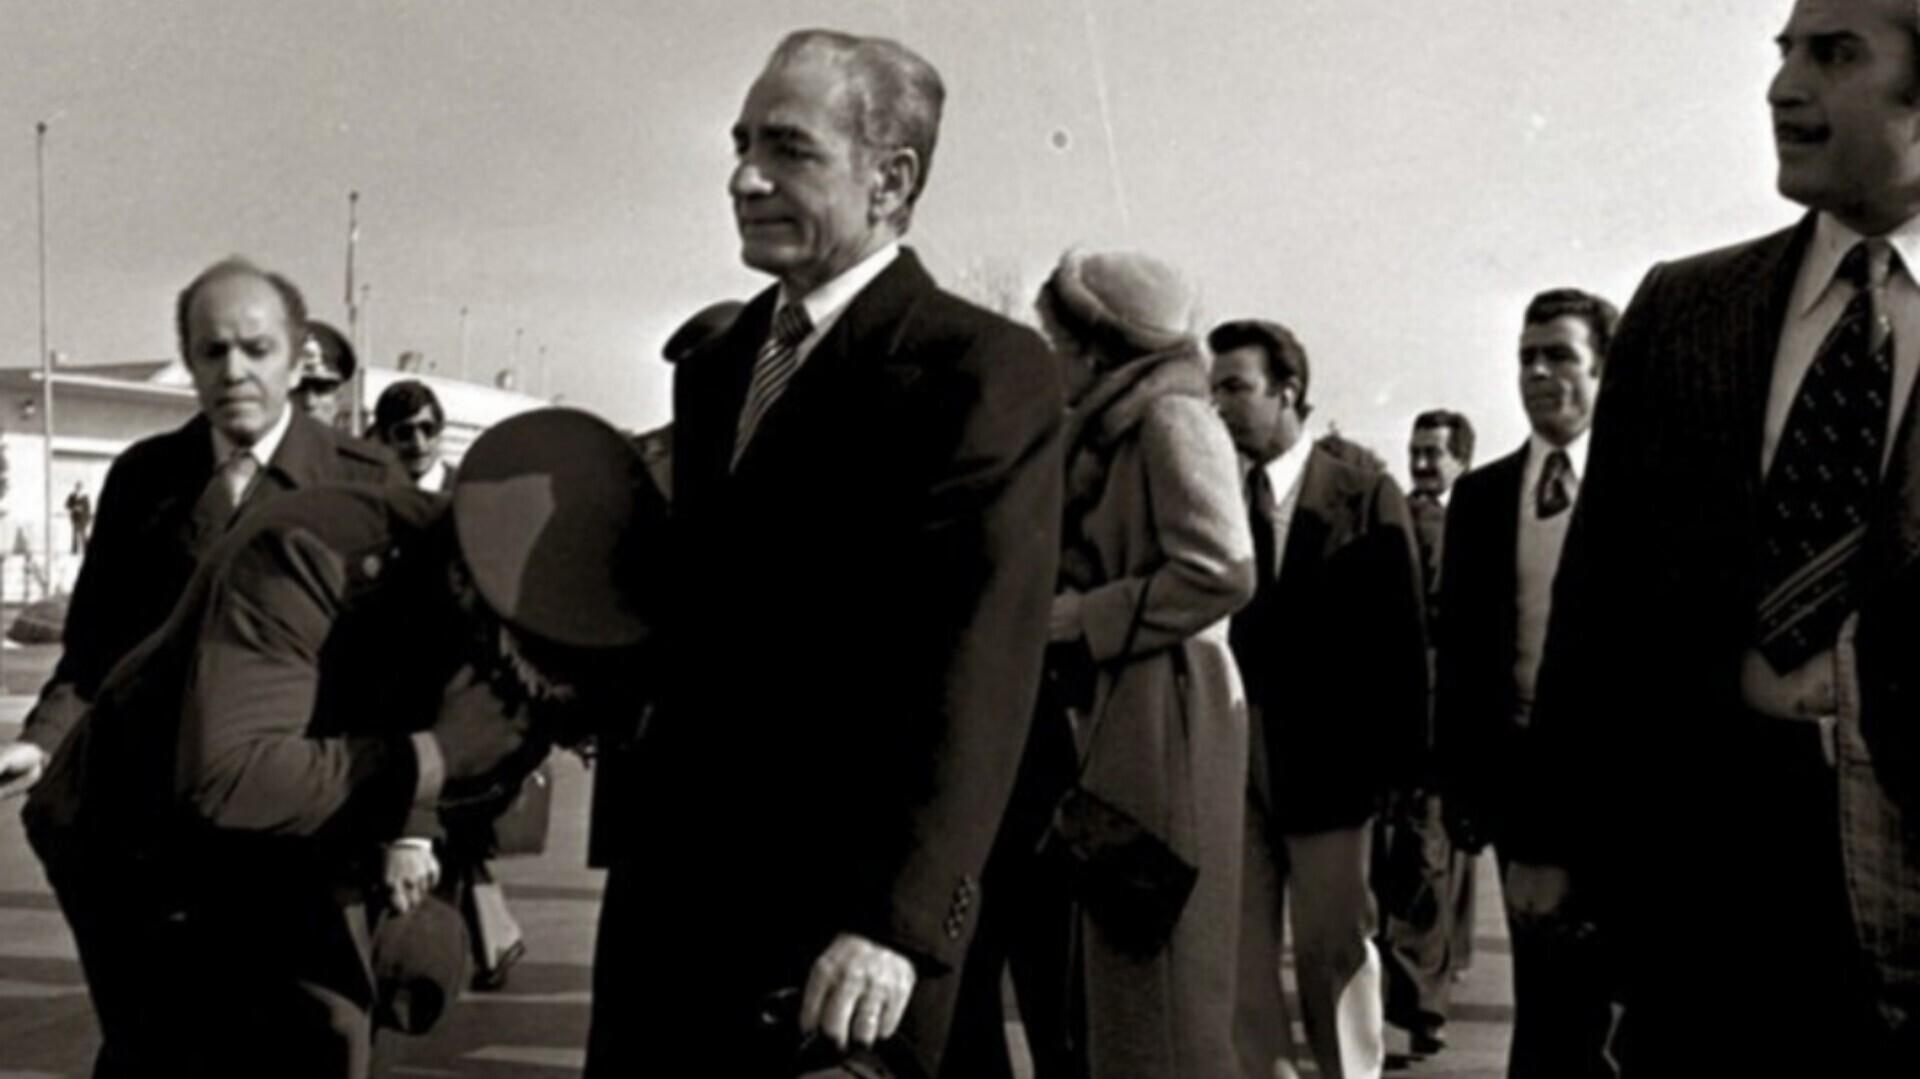 اسناد محرمانه سفیر اسرائیل در زمان رژیم پهلوی